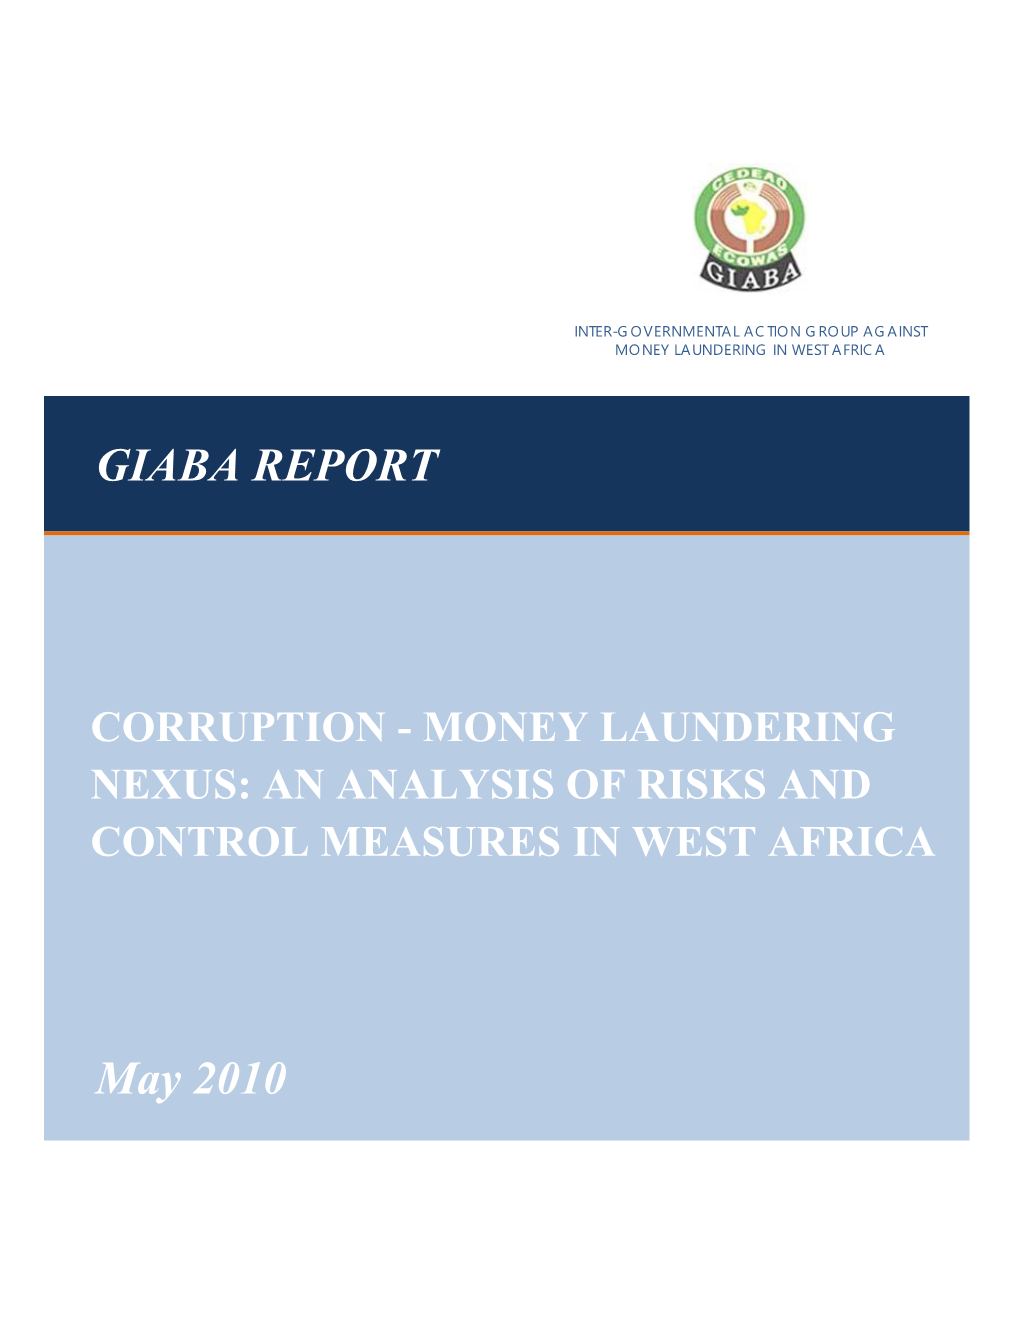 GIABA REPORT May 2010